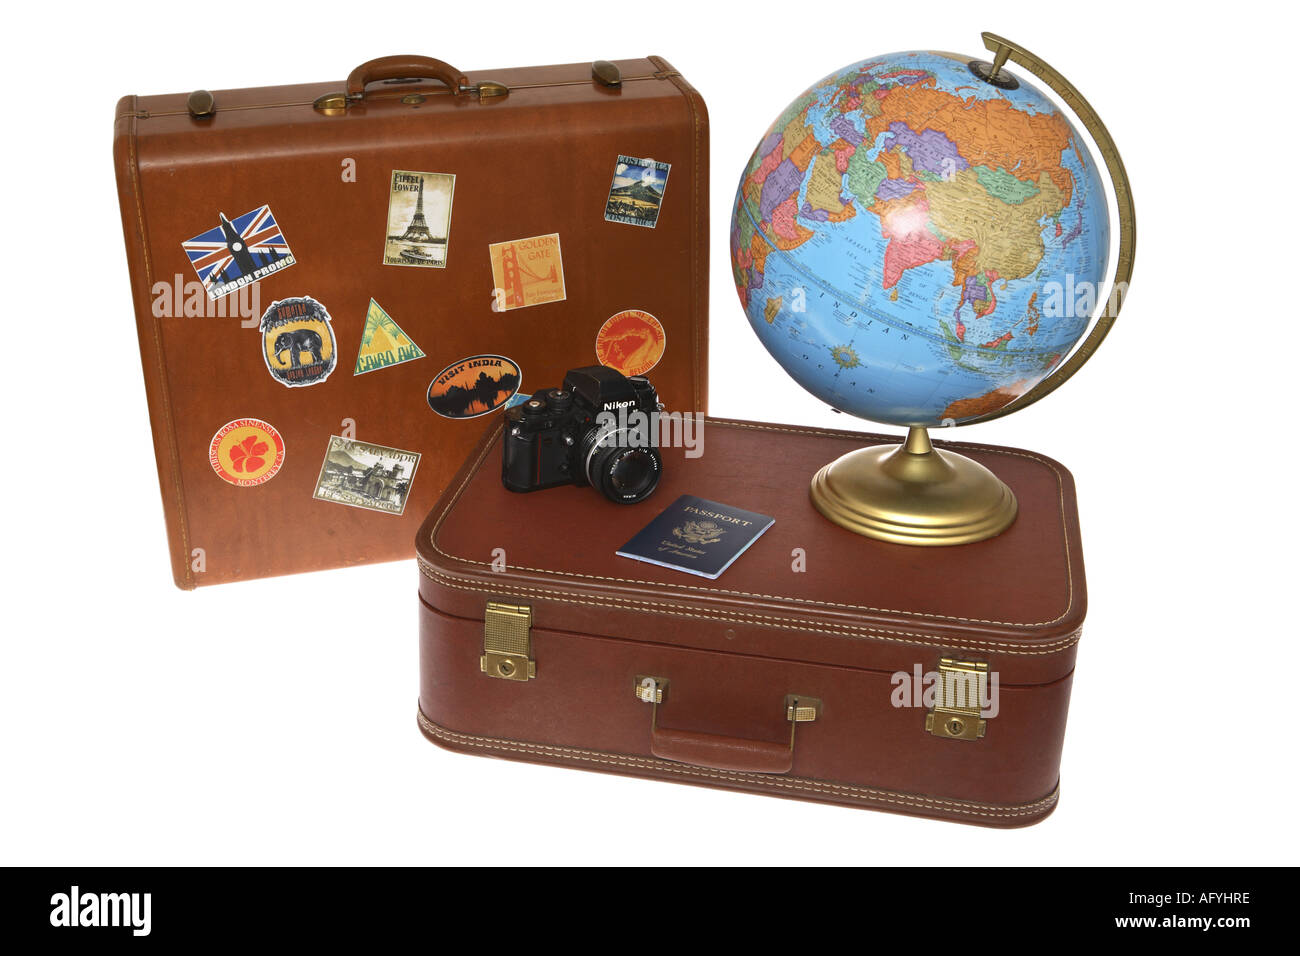 Глобус с чемоданом. Глобус и чемодан путешественника. Глобус и чемодан картинка. Глобус в чемодане. Азия.